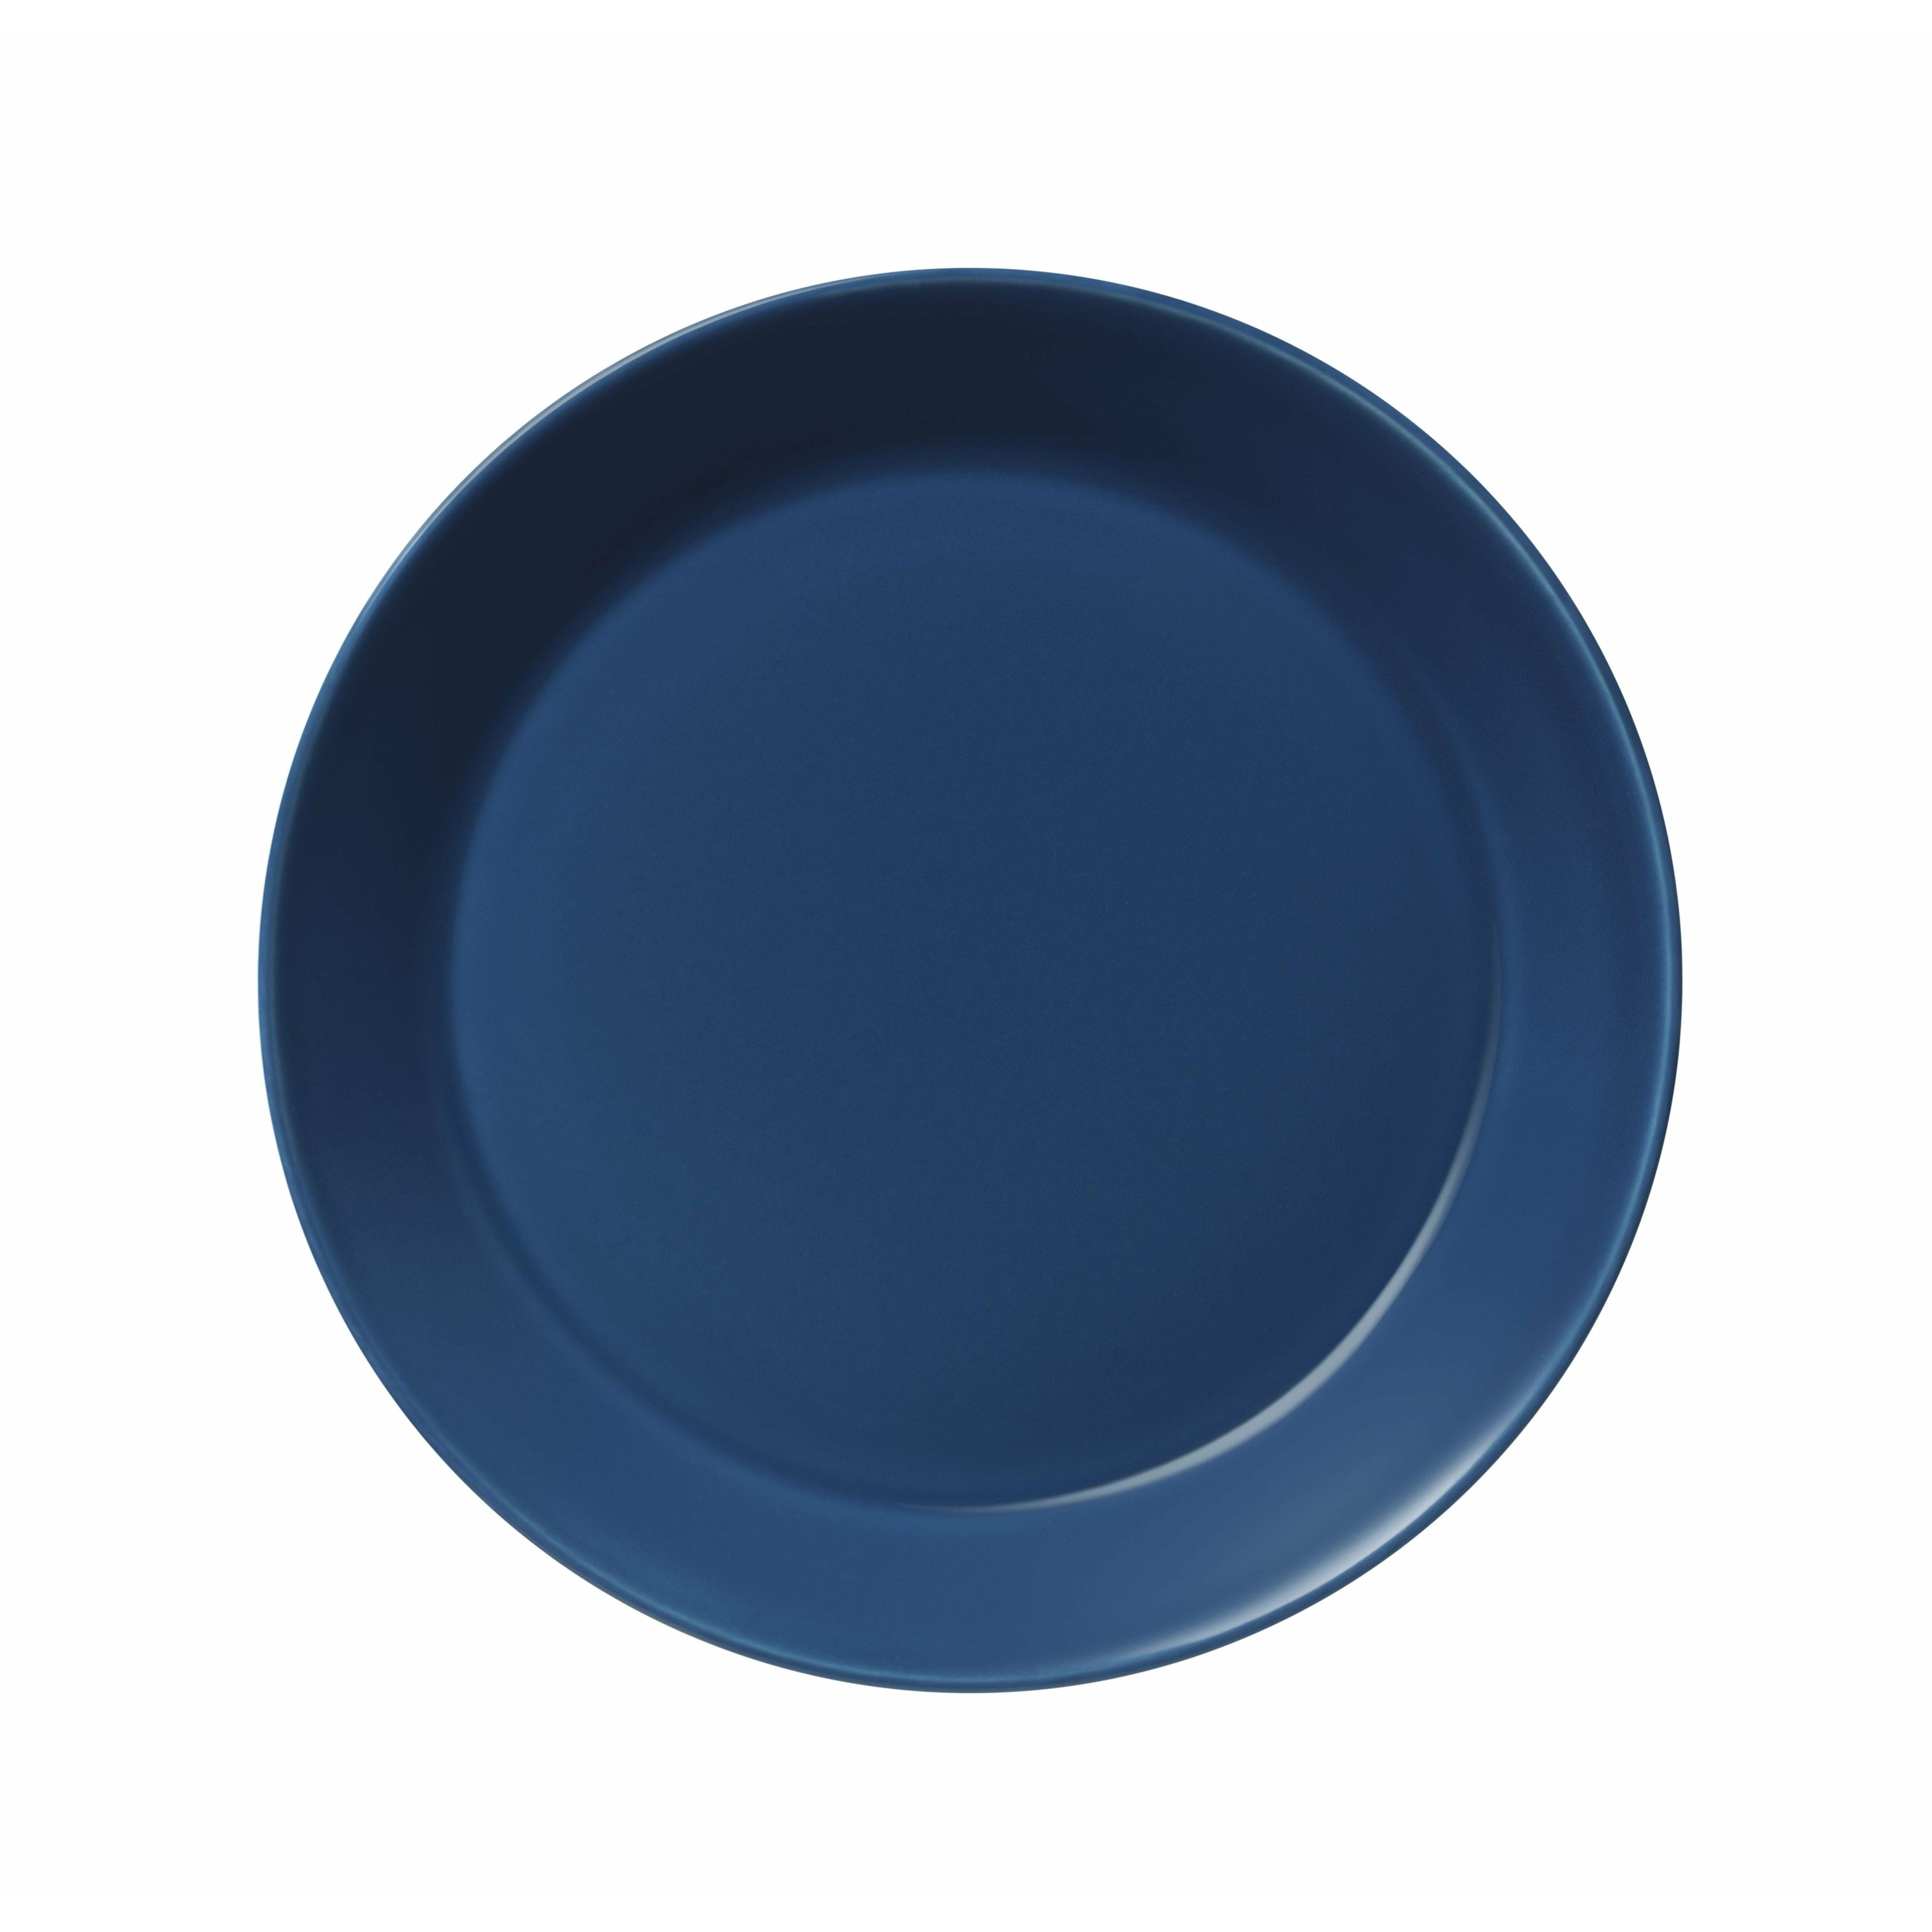 Iittala teema plate 21cm, vintage blå